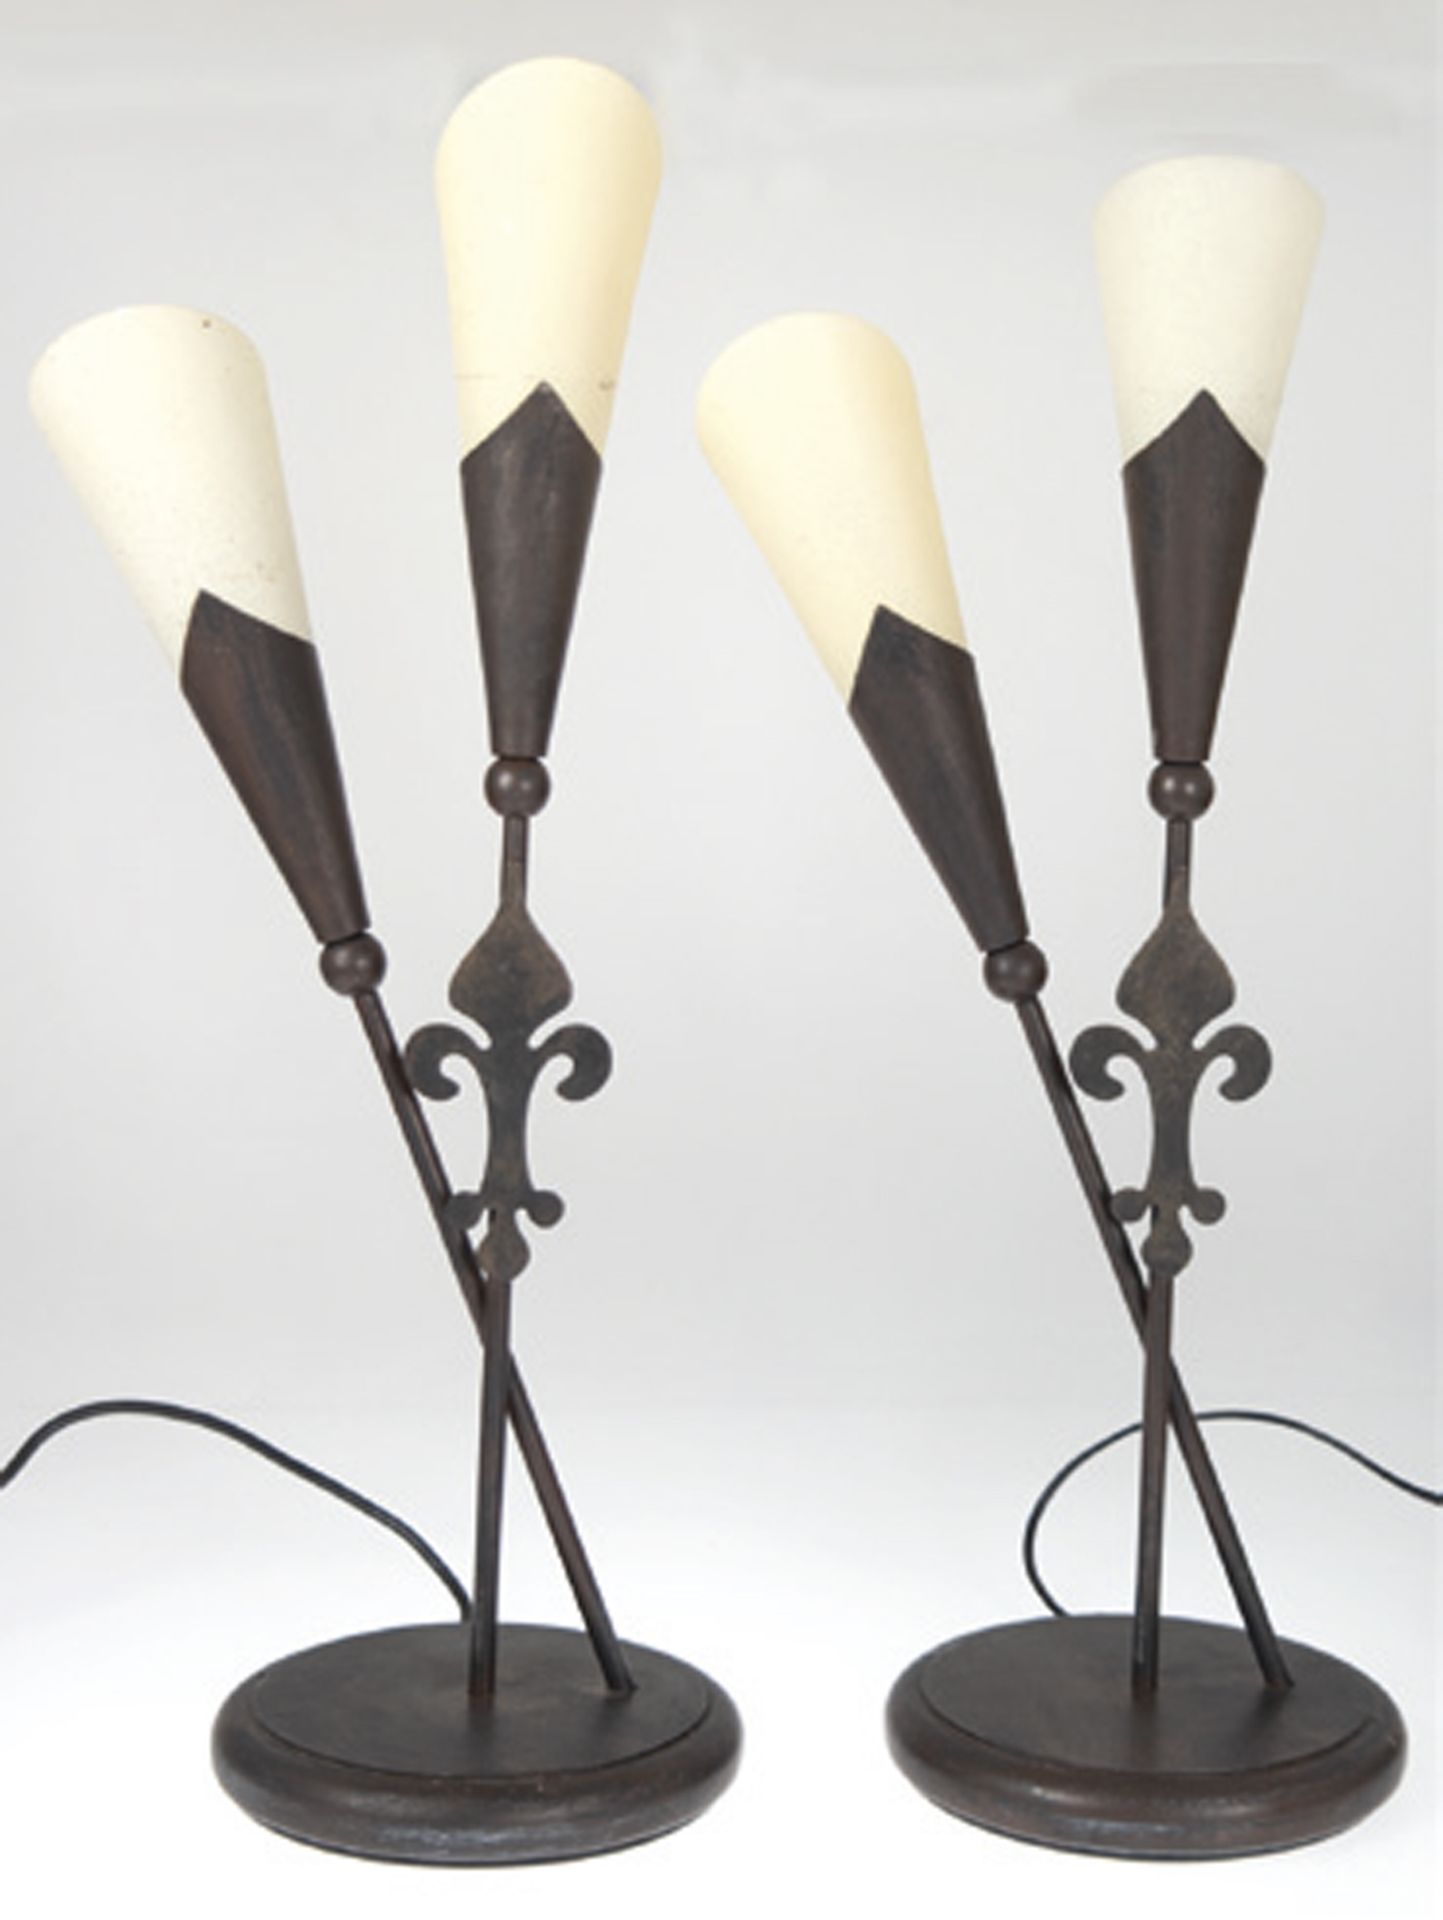 2 Tischlampen, 2-flammig, Metall braun gefaßt, auf rundem Fuß zwei sich kreuzende Leuchterarme  mit